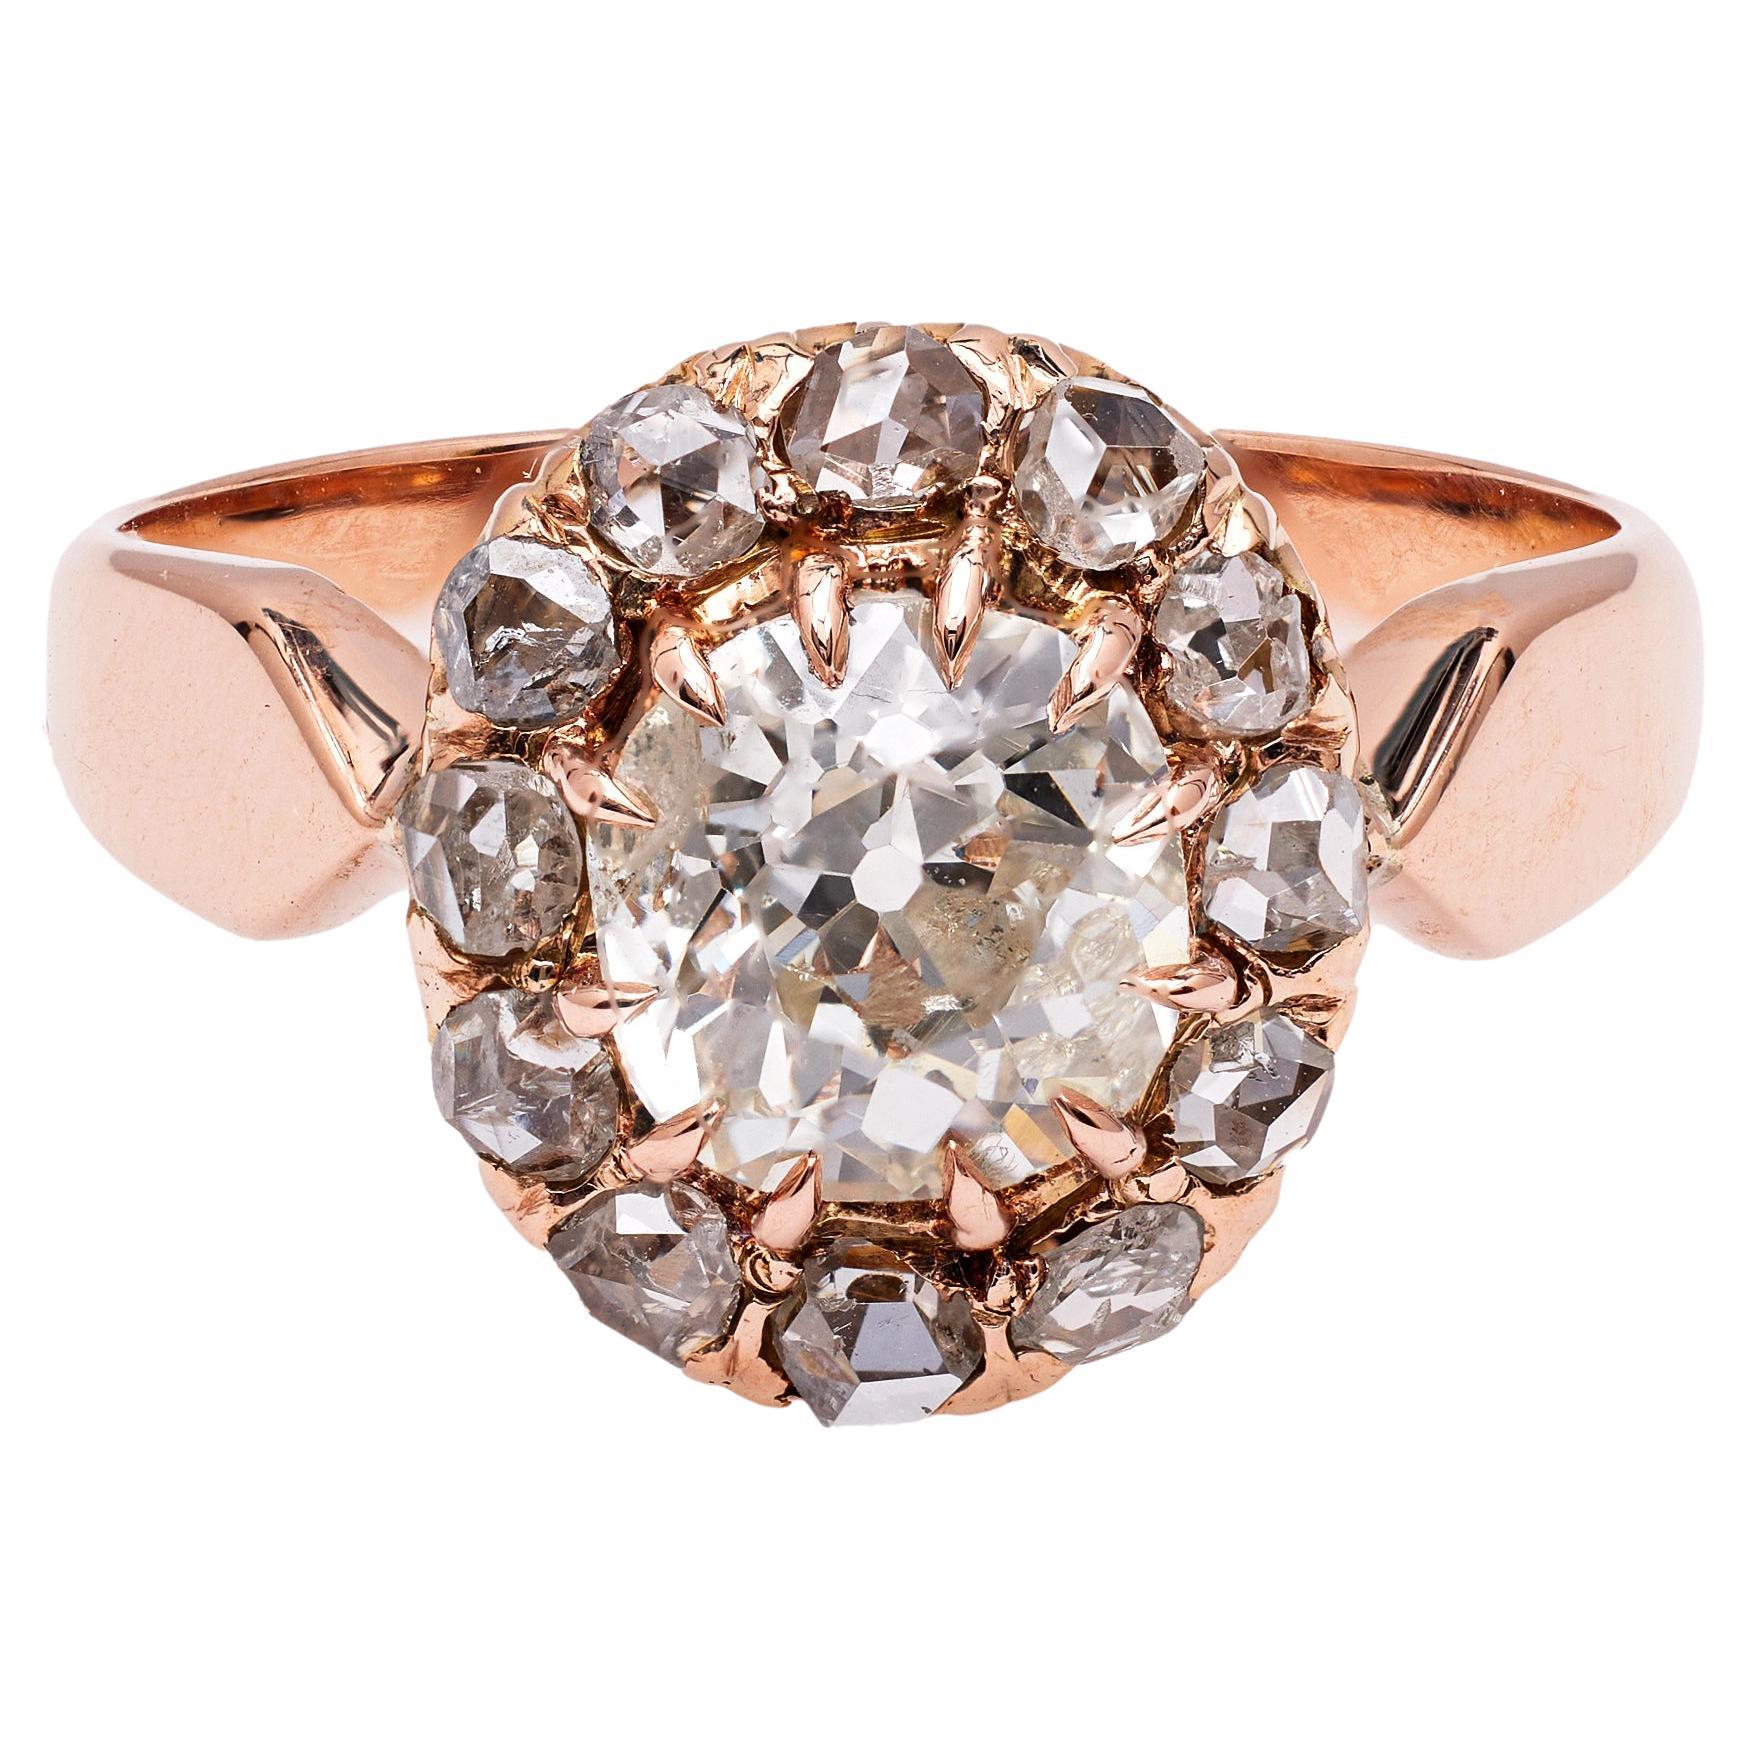 Victorian GIA 1.20 Carat Diamond 18k Rose Gold Cluster Ring